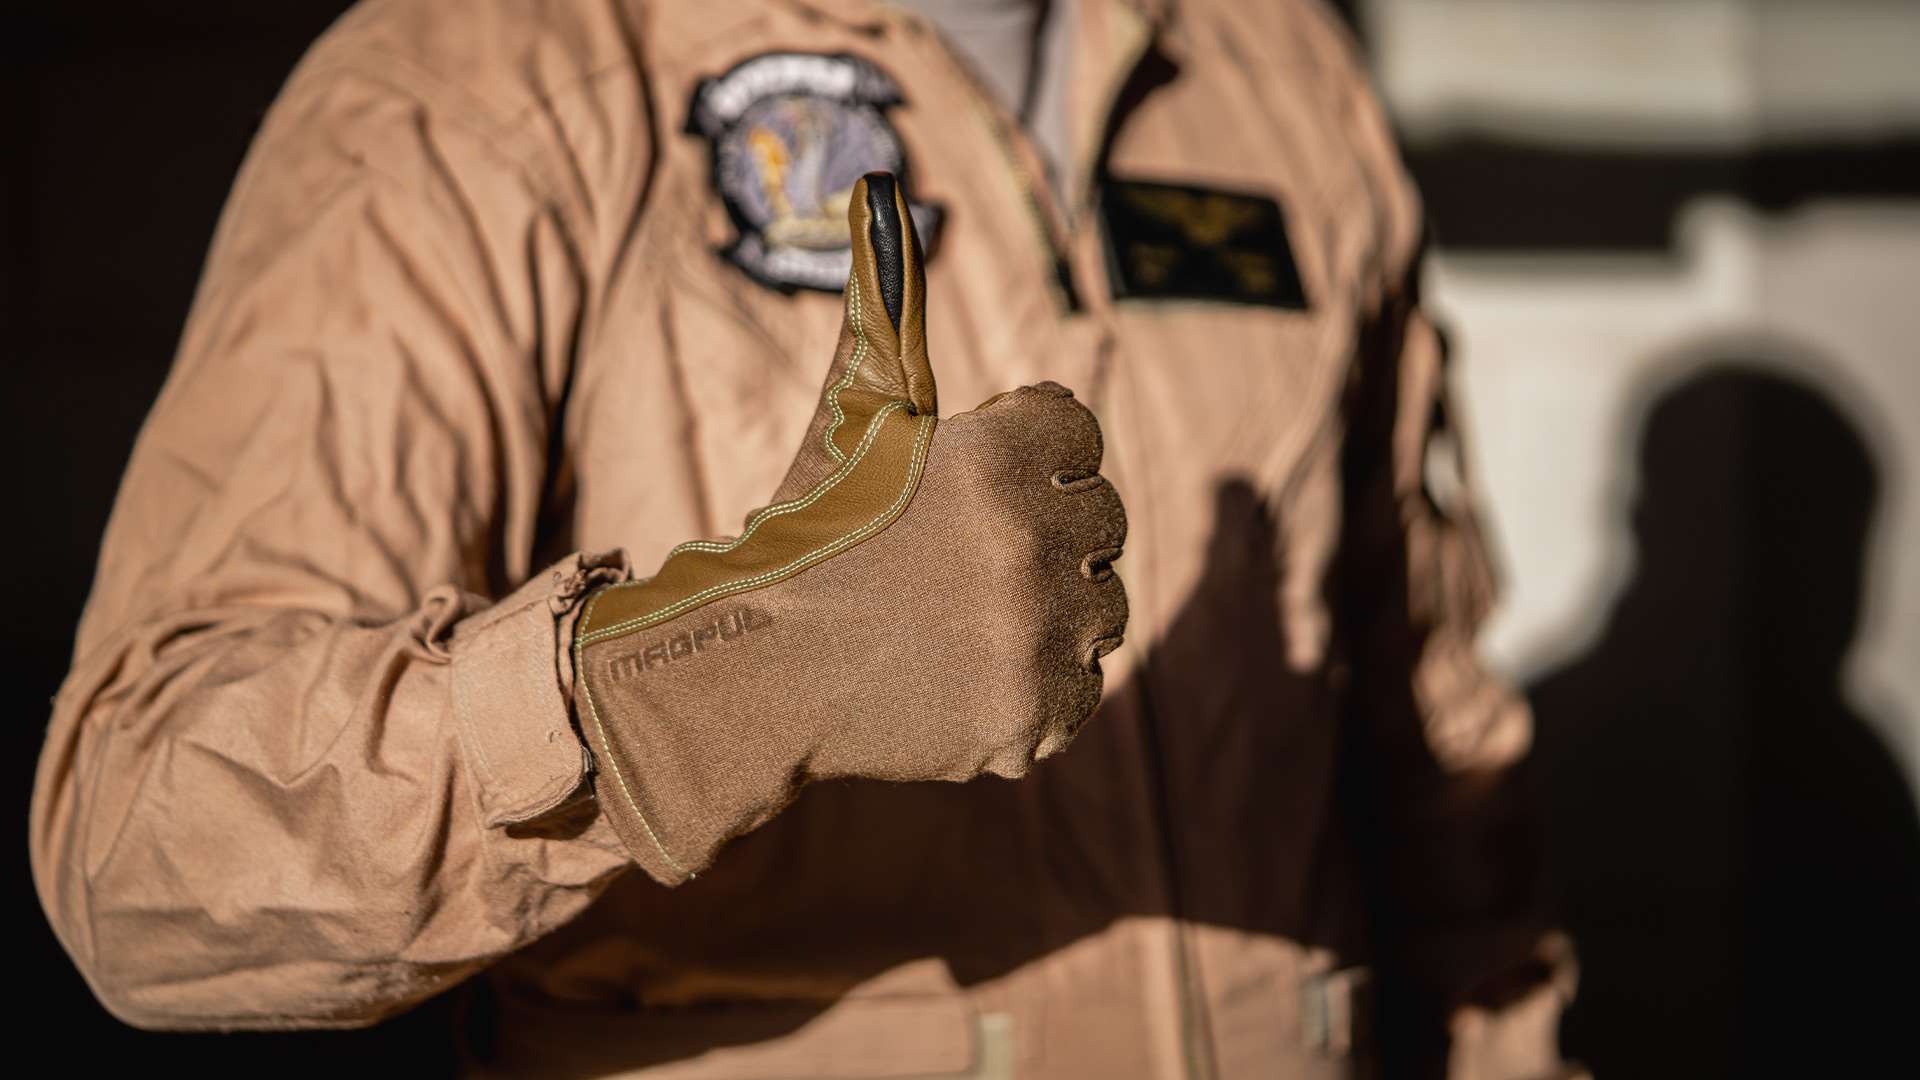 Magpul aviator glove